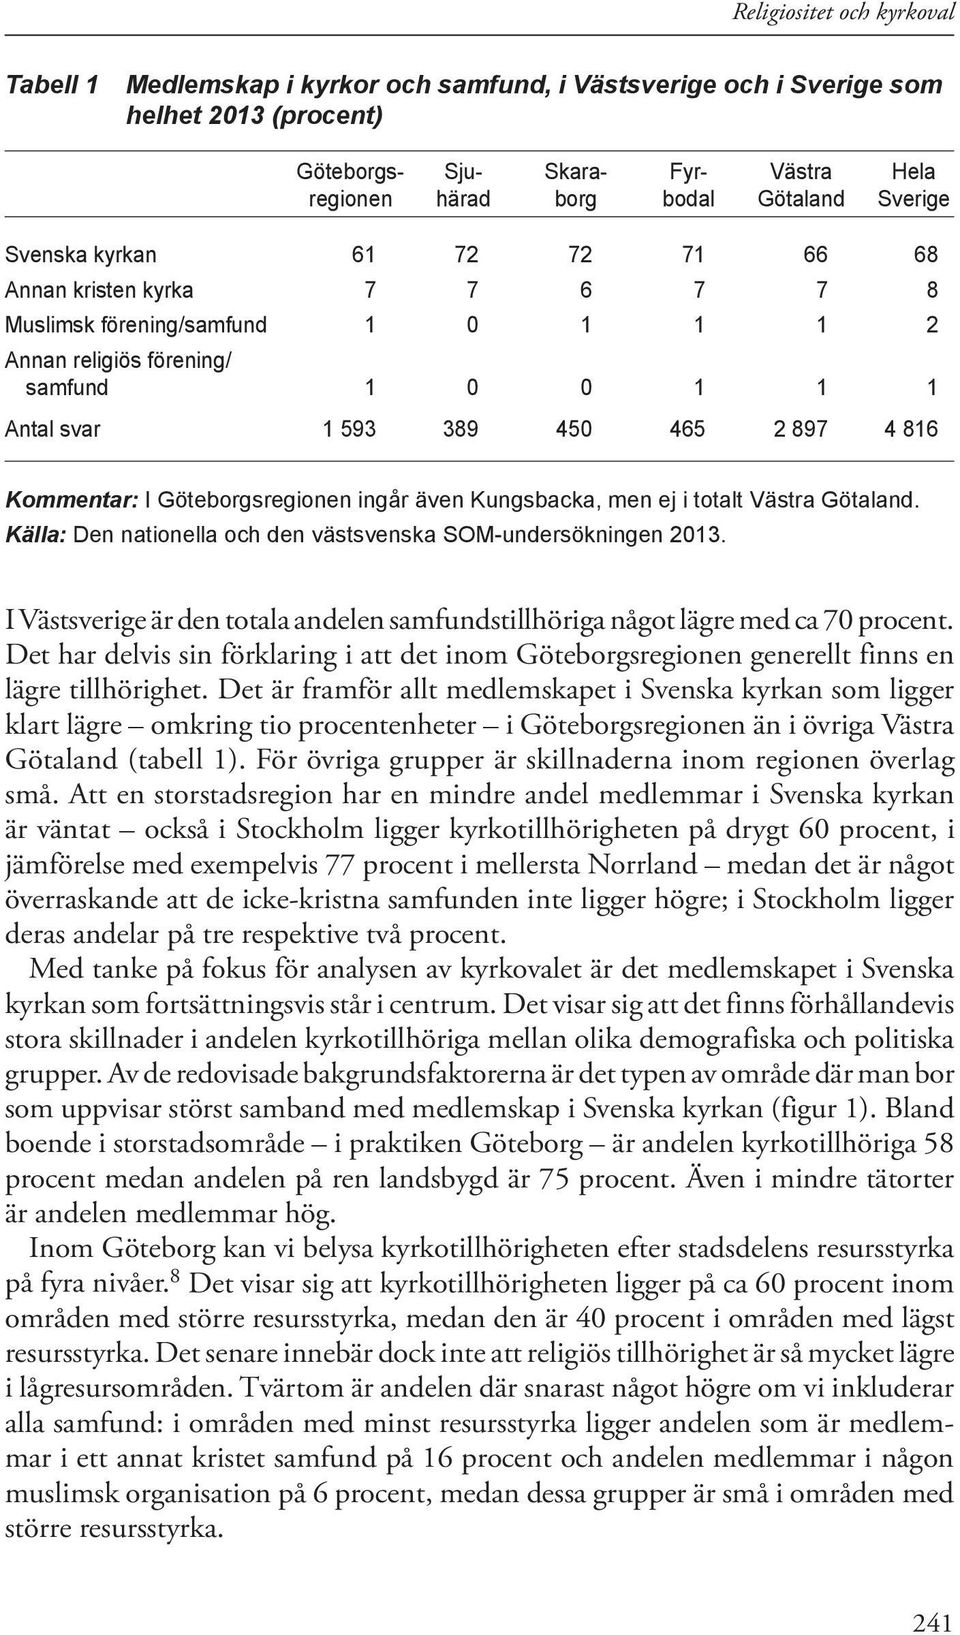 ingår även Kungsbacka, men ej i totalt Västra Götaland. Källa: Den nationella och den västsvenska SOM-undersökningen 2013.